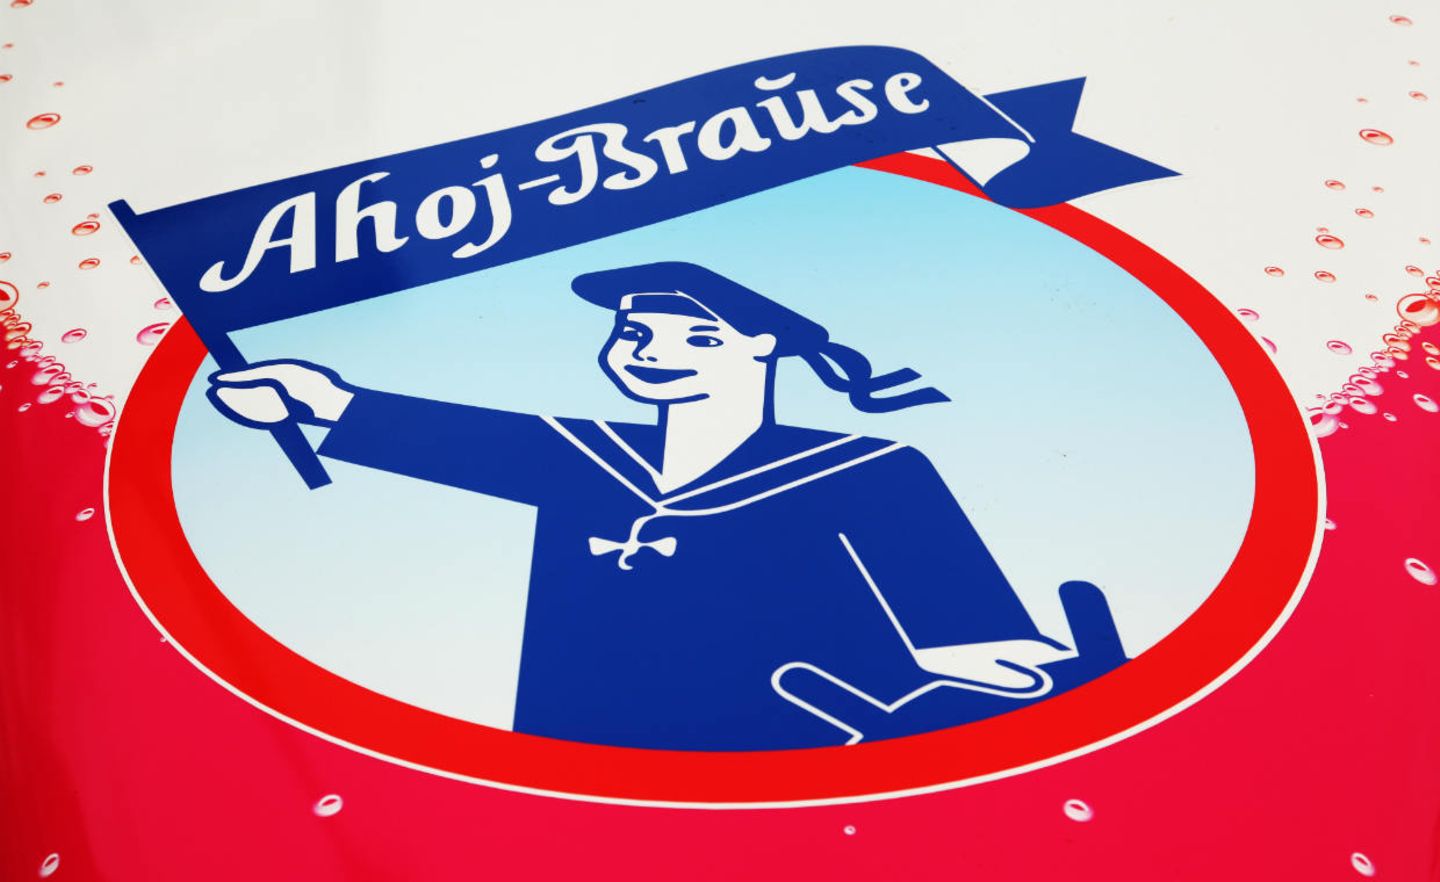 Bekanntes Logo: Ahoj-Brause gibt es seit 1925